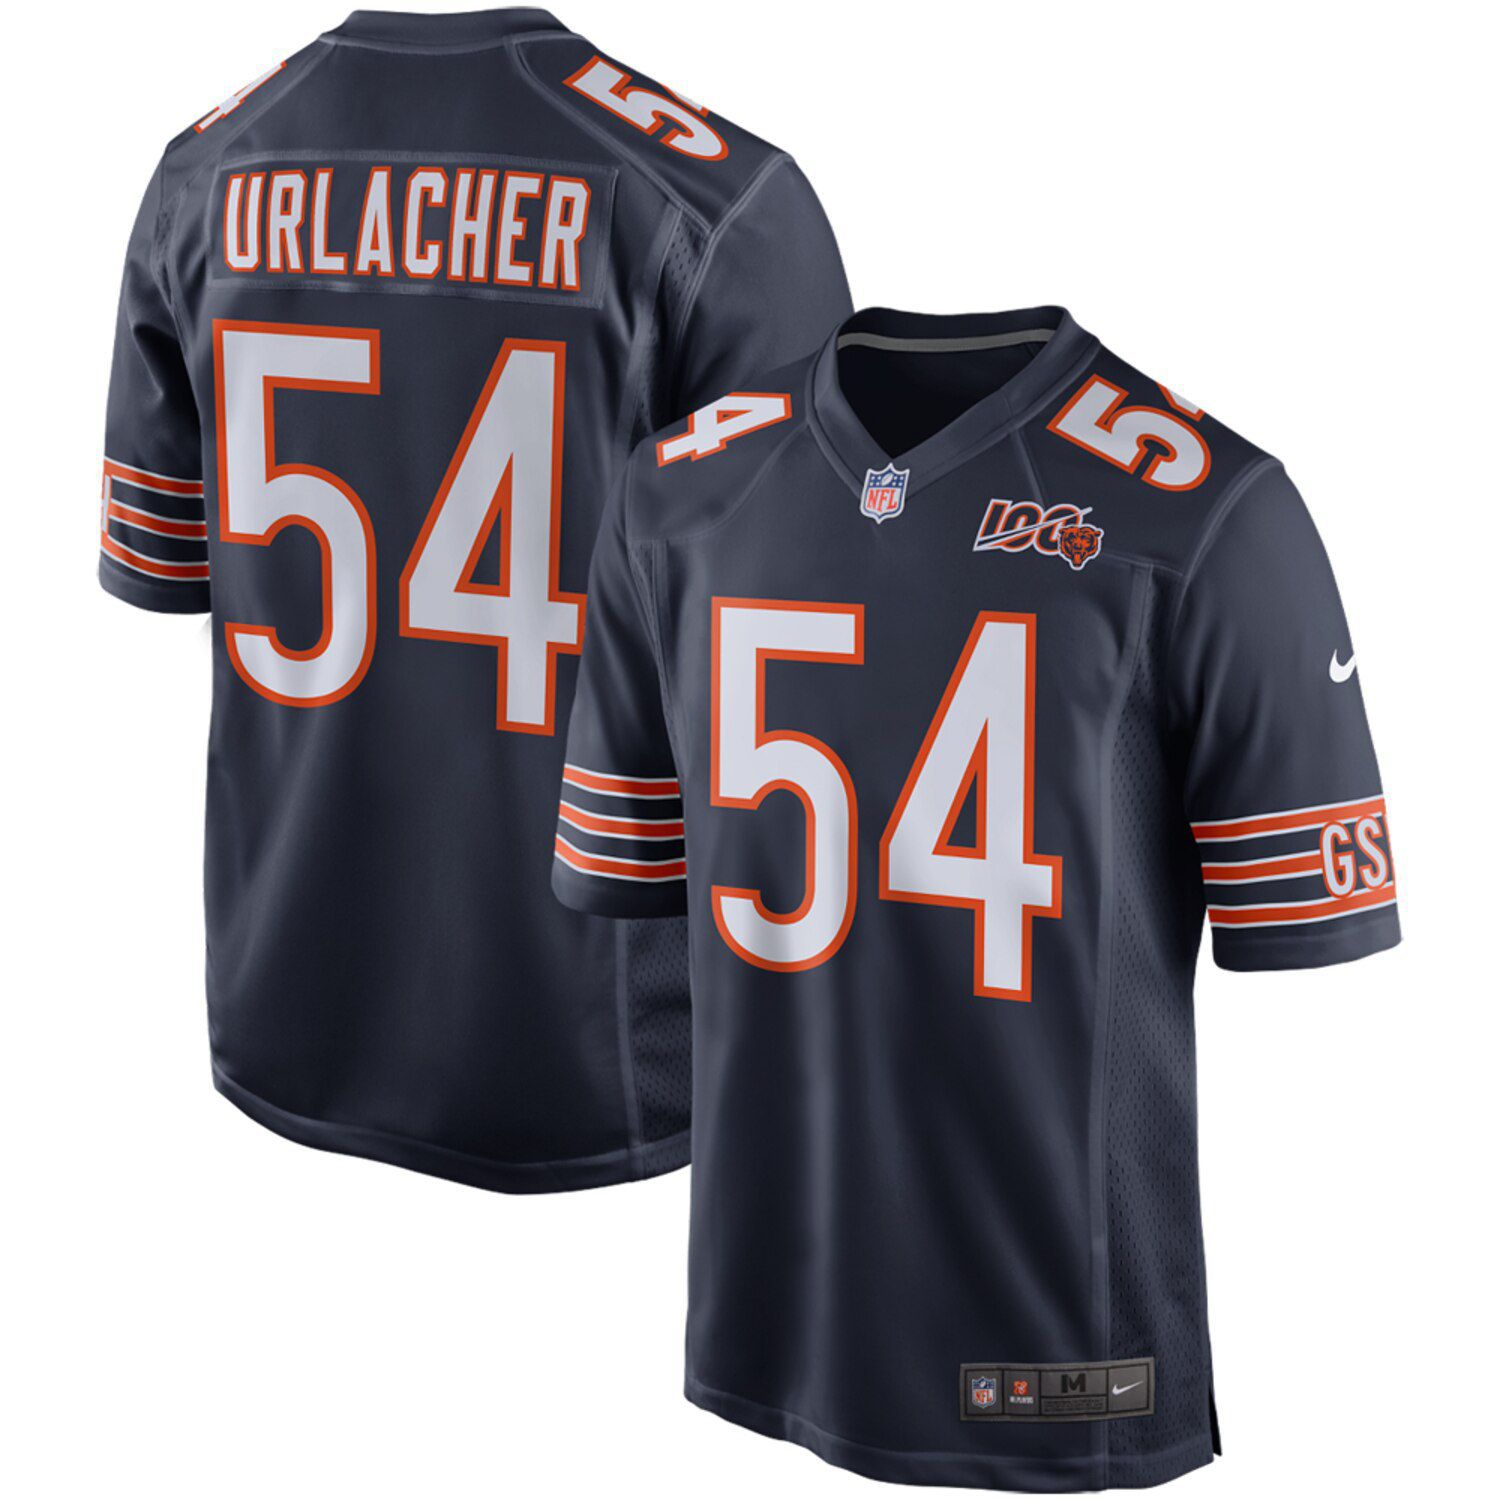 chicago bears urlacher jersey